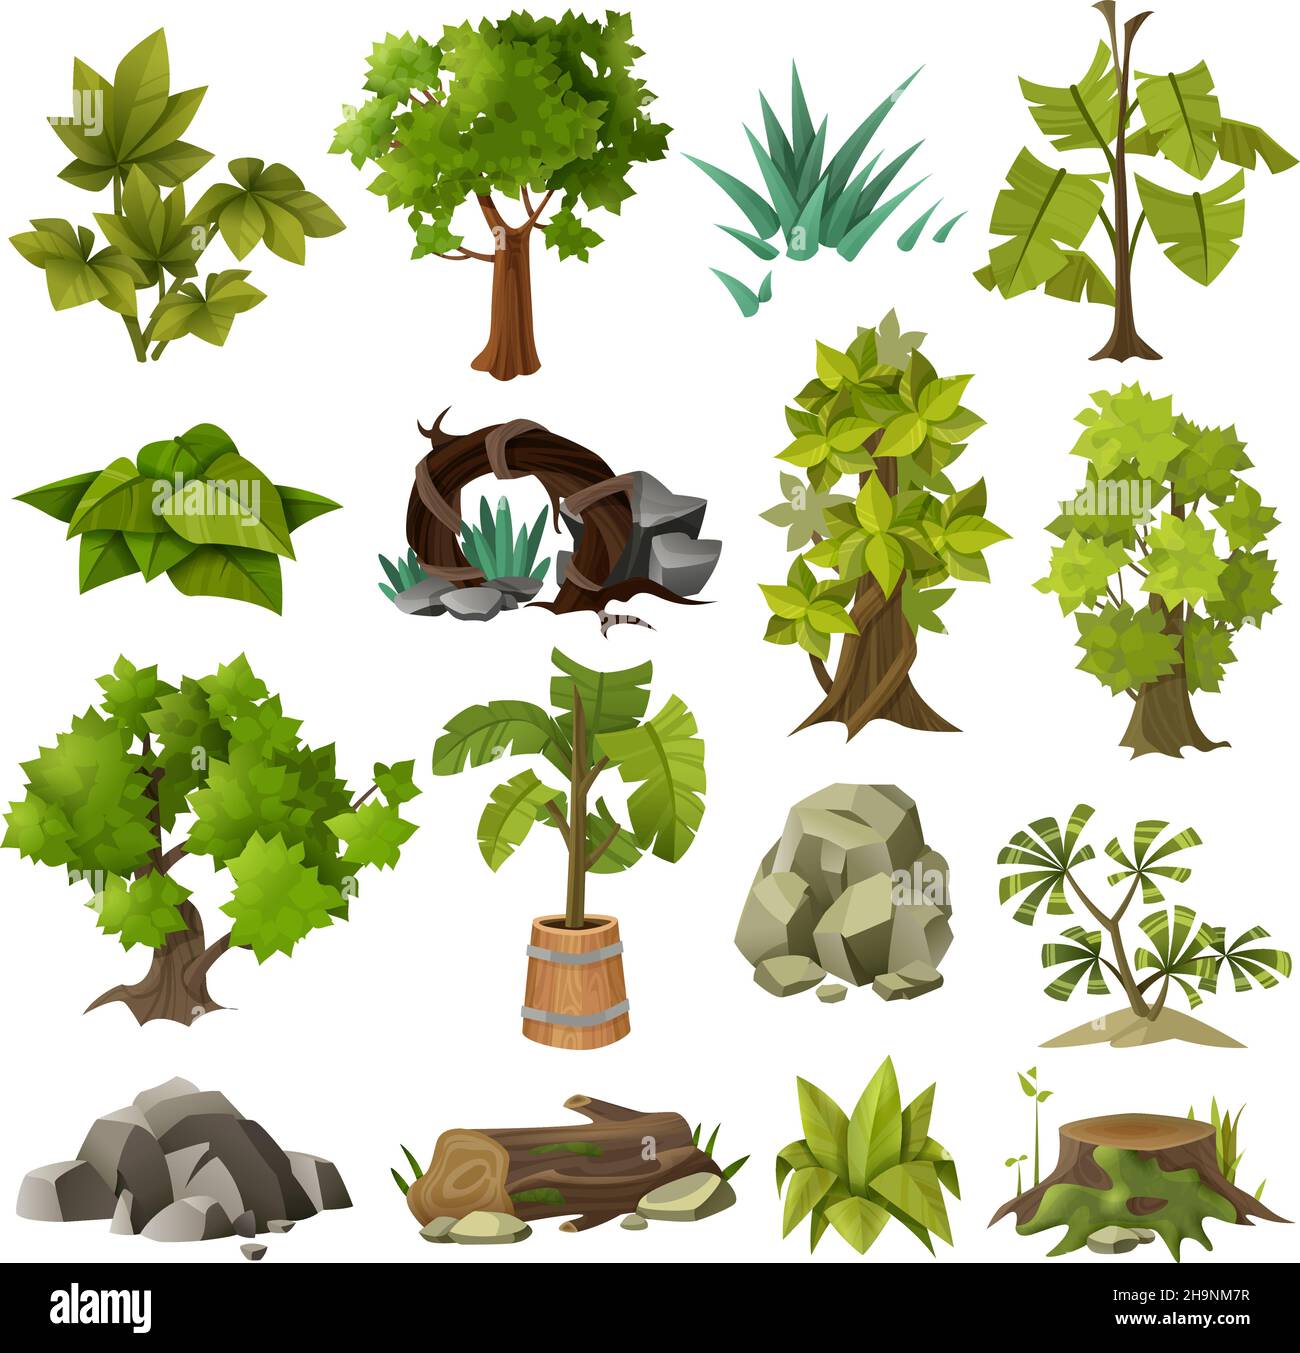 Grüne tropische exotische Pflanzen Waldbäume und moderne Landschaftsgärtnerei Design Elements Icons Sammlung isolierte Vektor-Illustration Stock Vektor